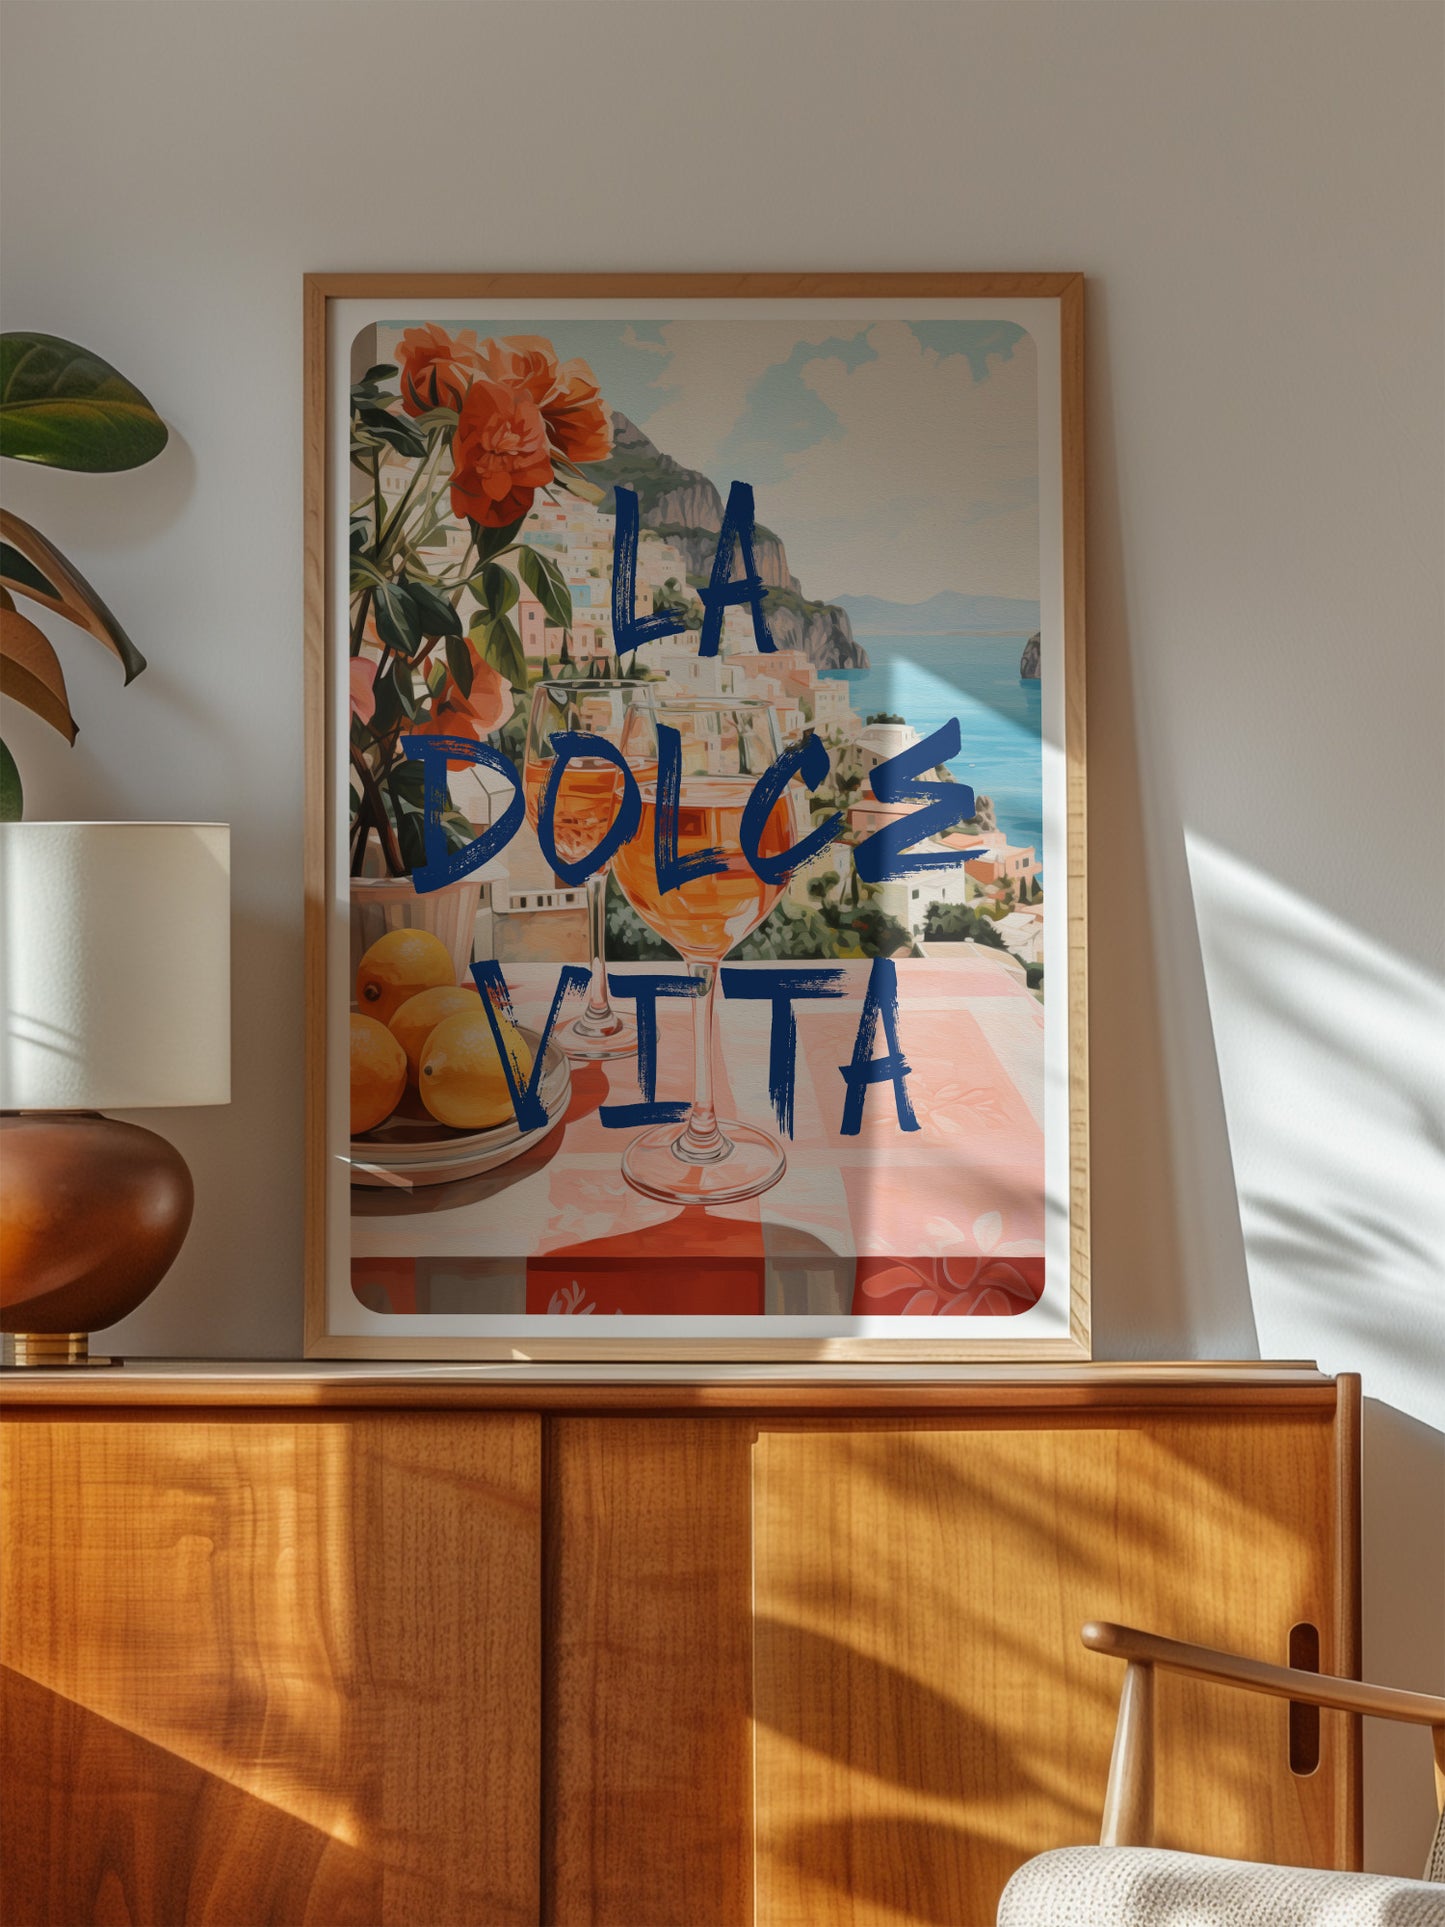 La Dolce Vita Italian Poster